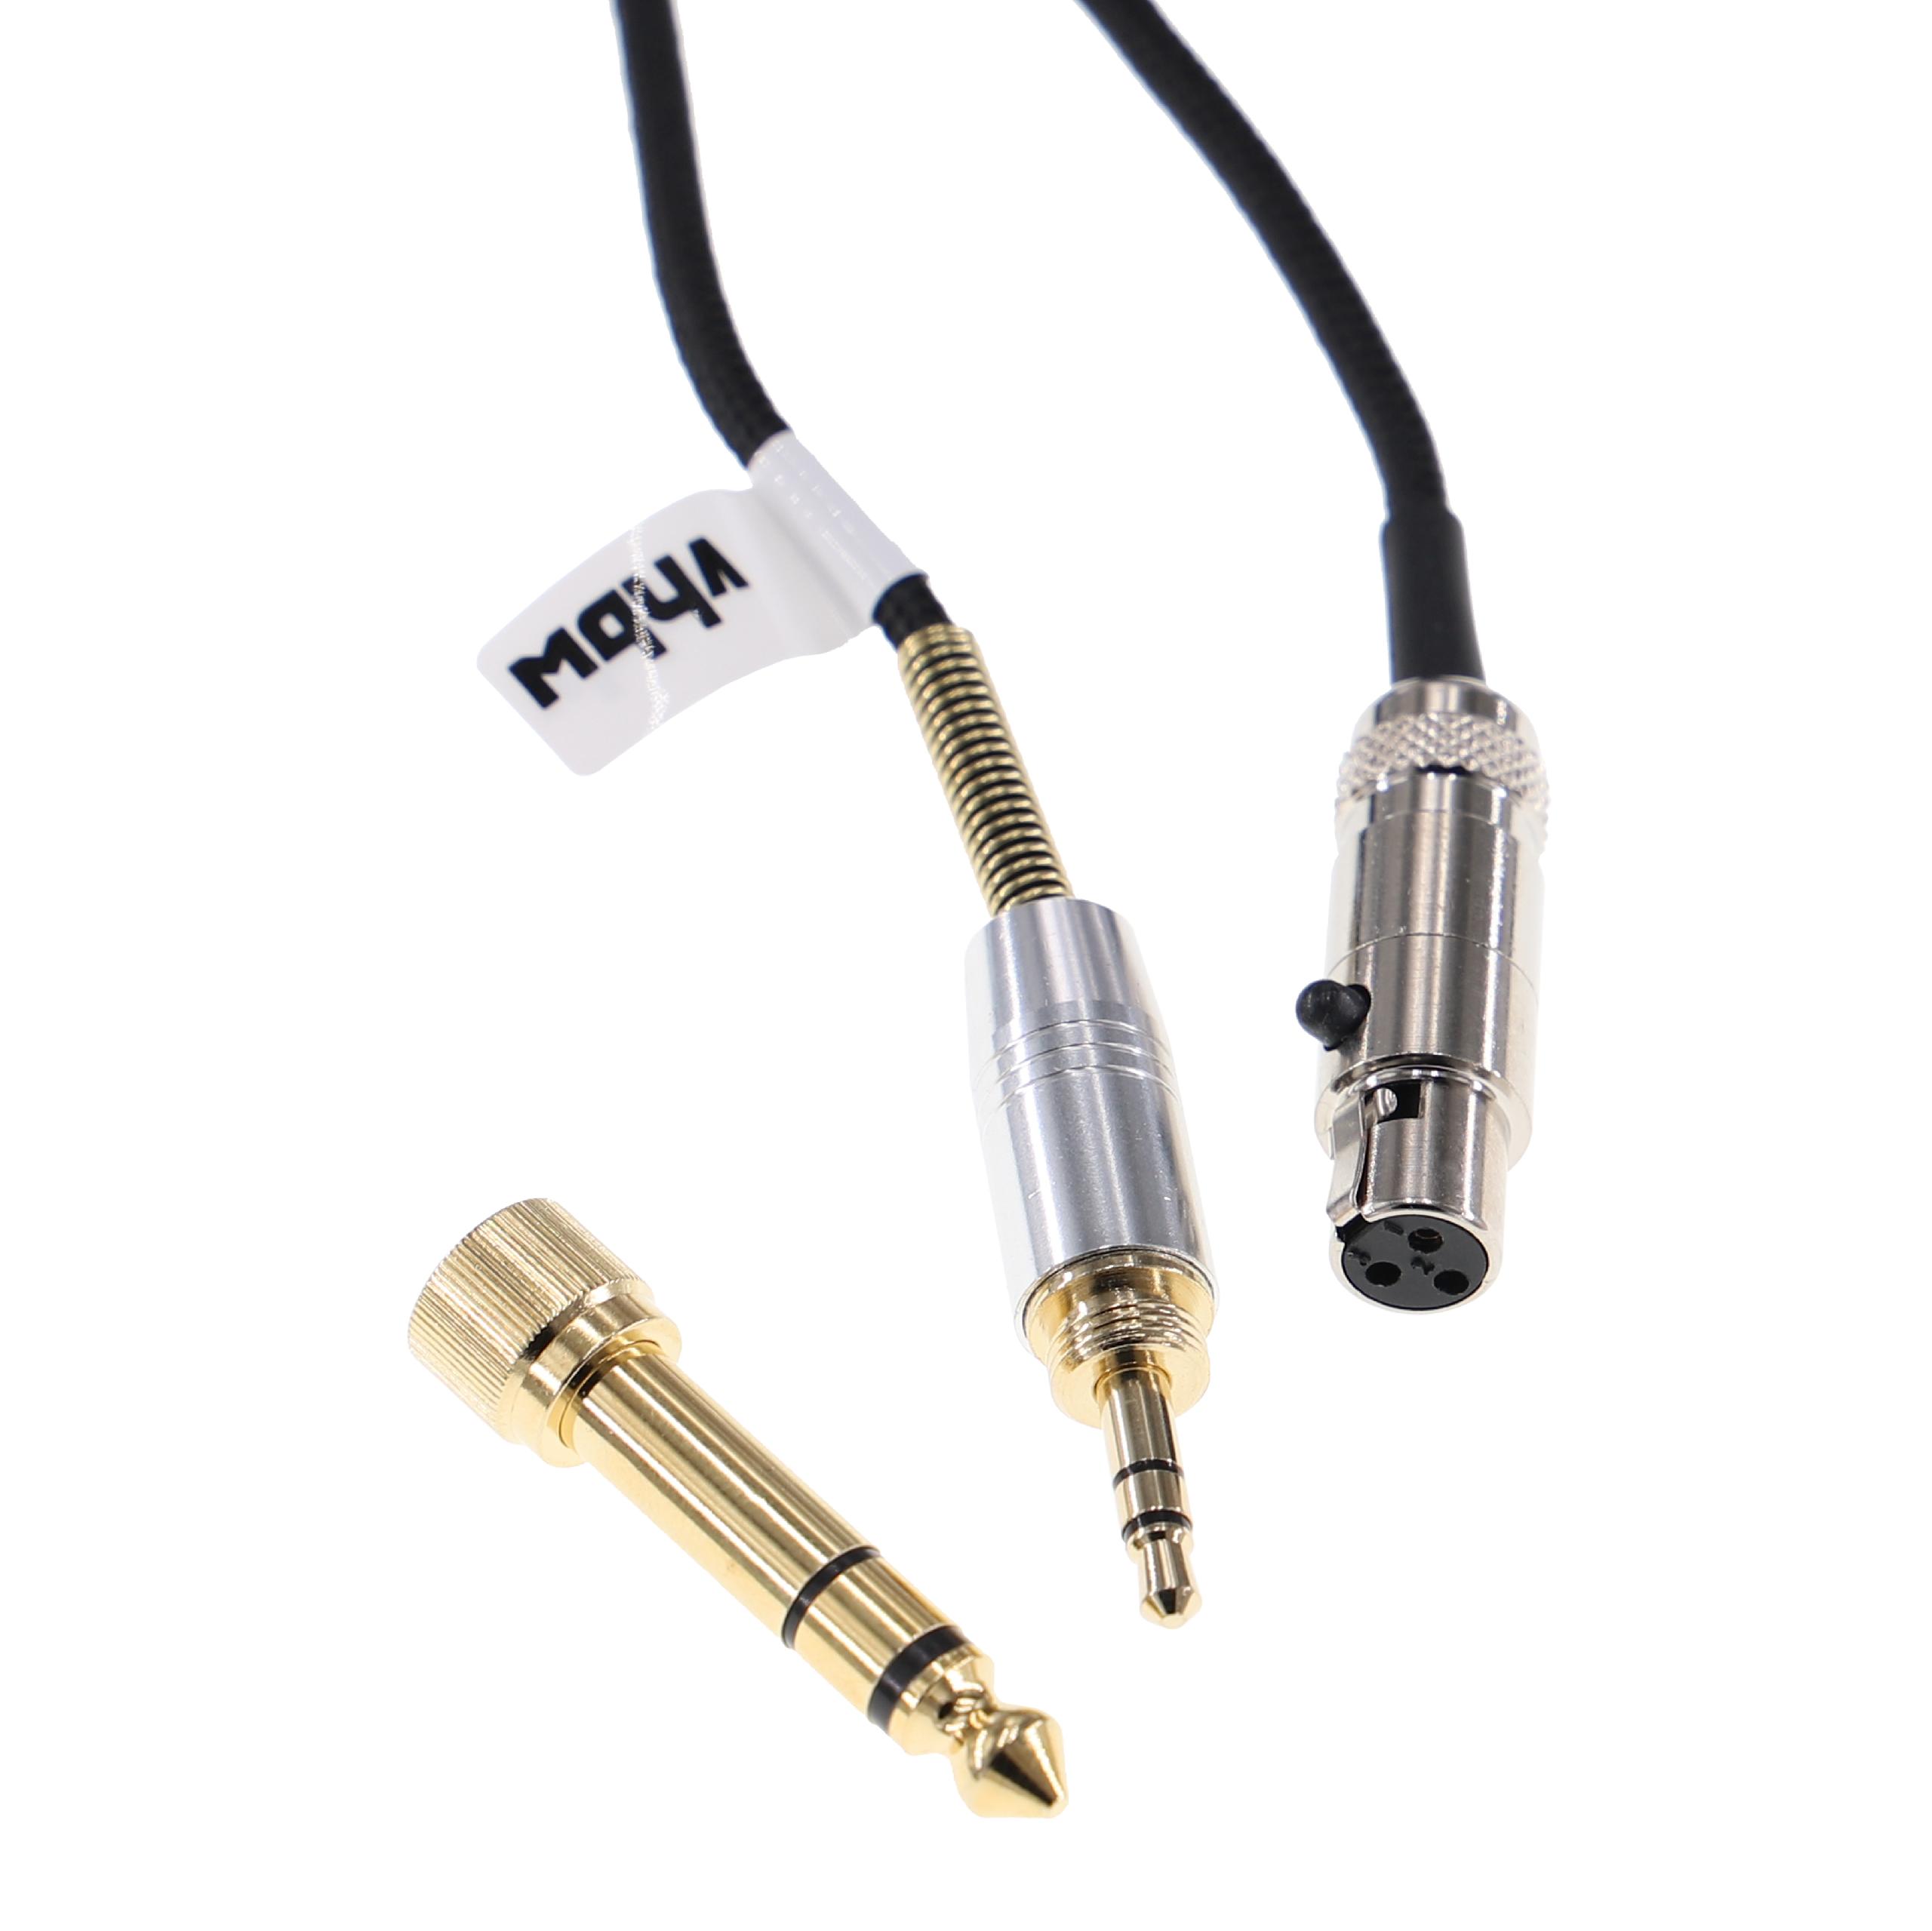 Kopfhörer Kabel passend für AKG, Pioneer K240 MK II u.a., 2 m, schwarz